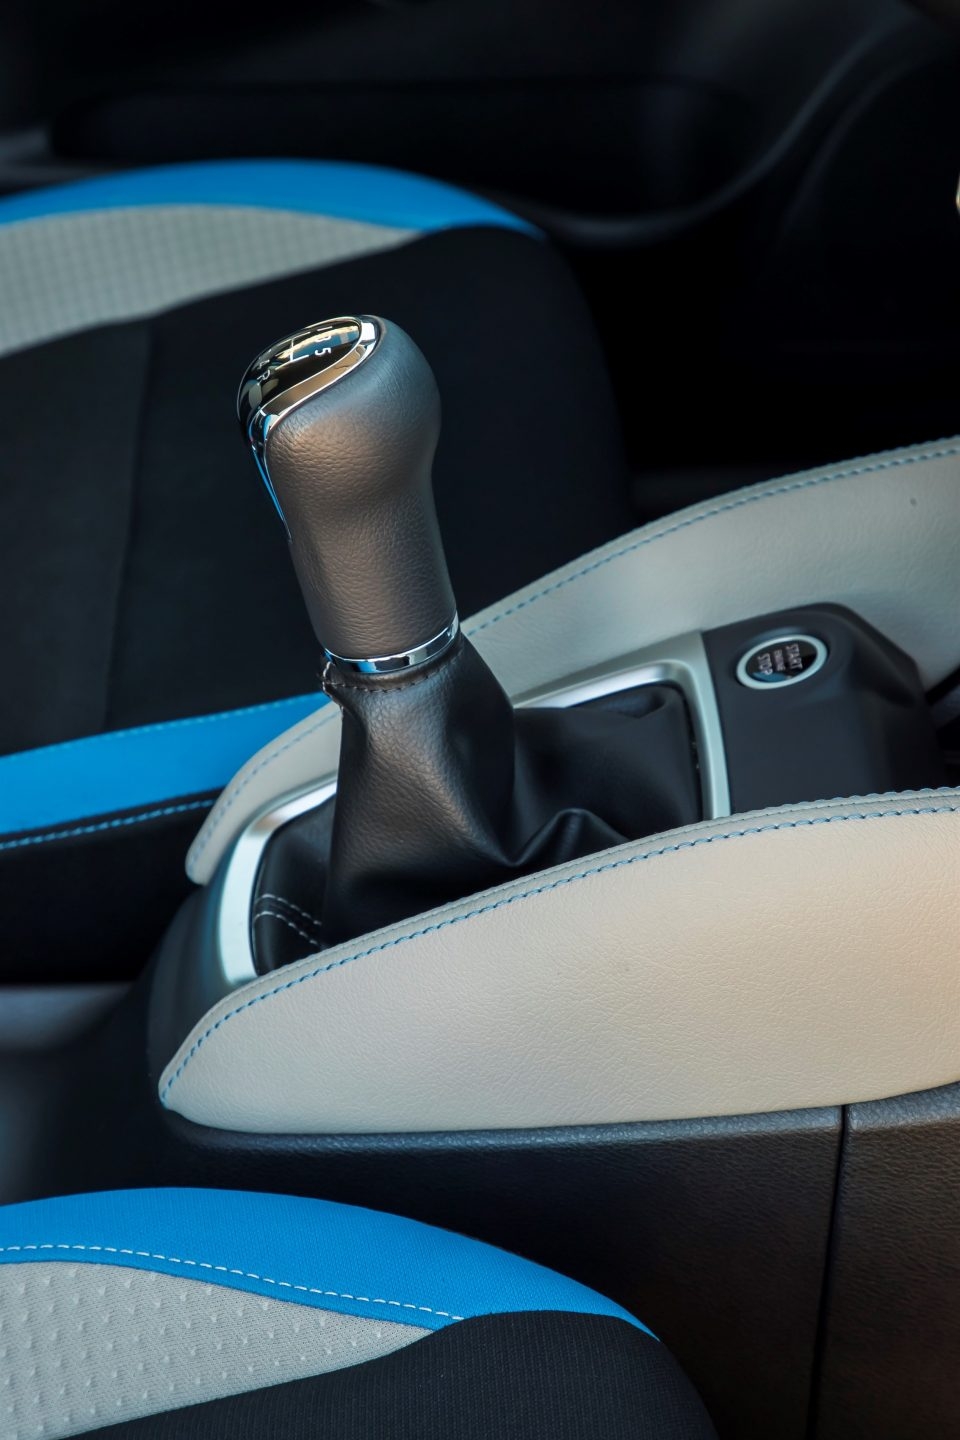 Delante de la palanca de cambio va el botón de arranque-parada del motor. La llave inteligente (de serie a partir del acabado N-Connecta) también permite el acceso manos libres al interior del vehículo.